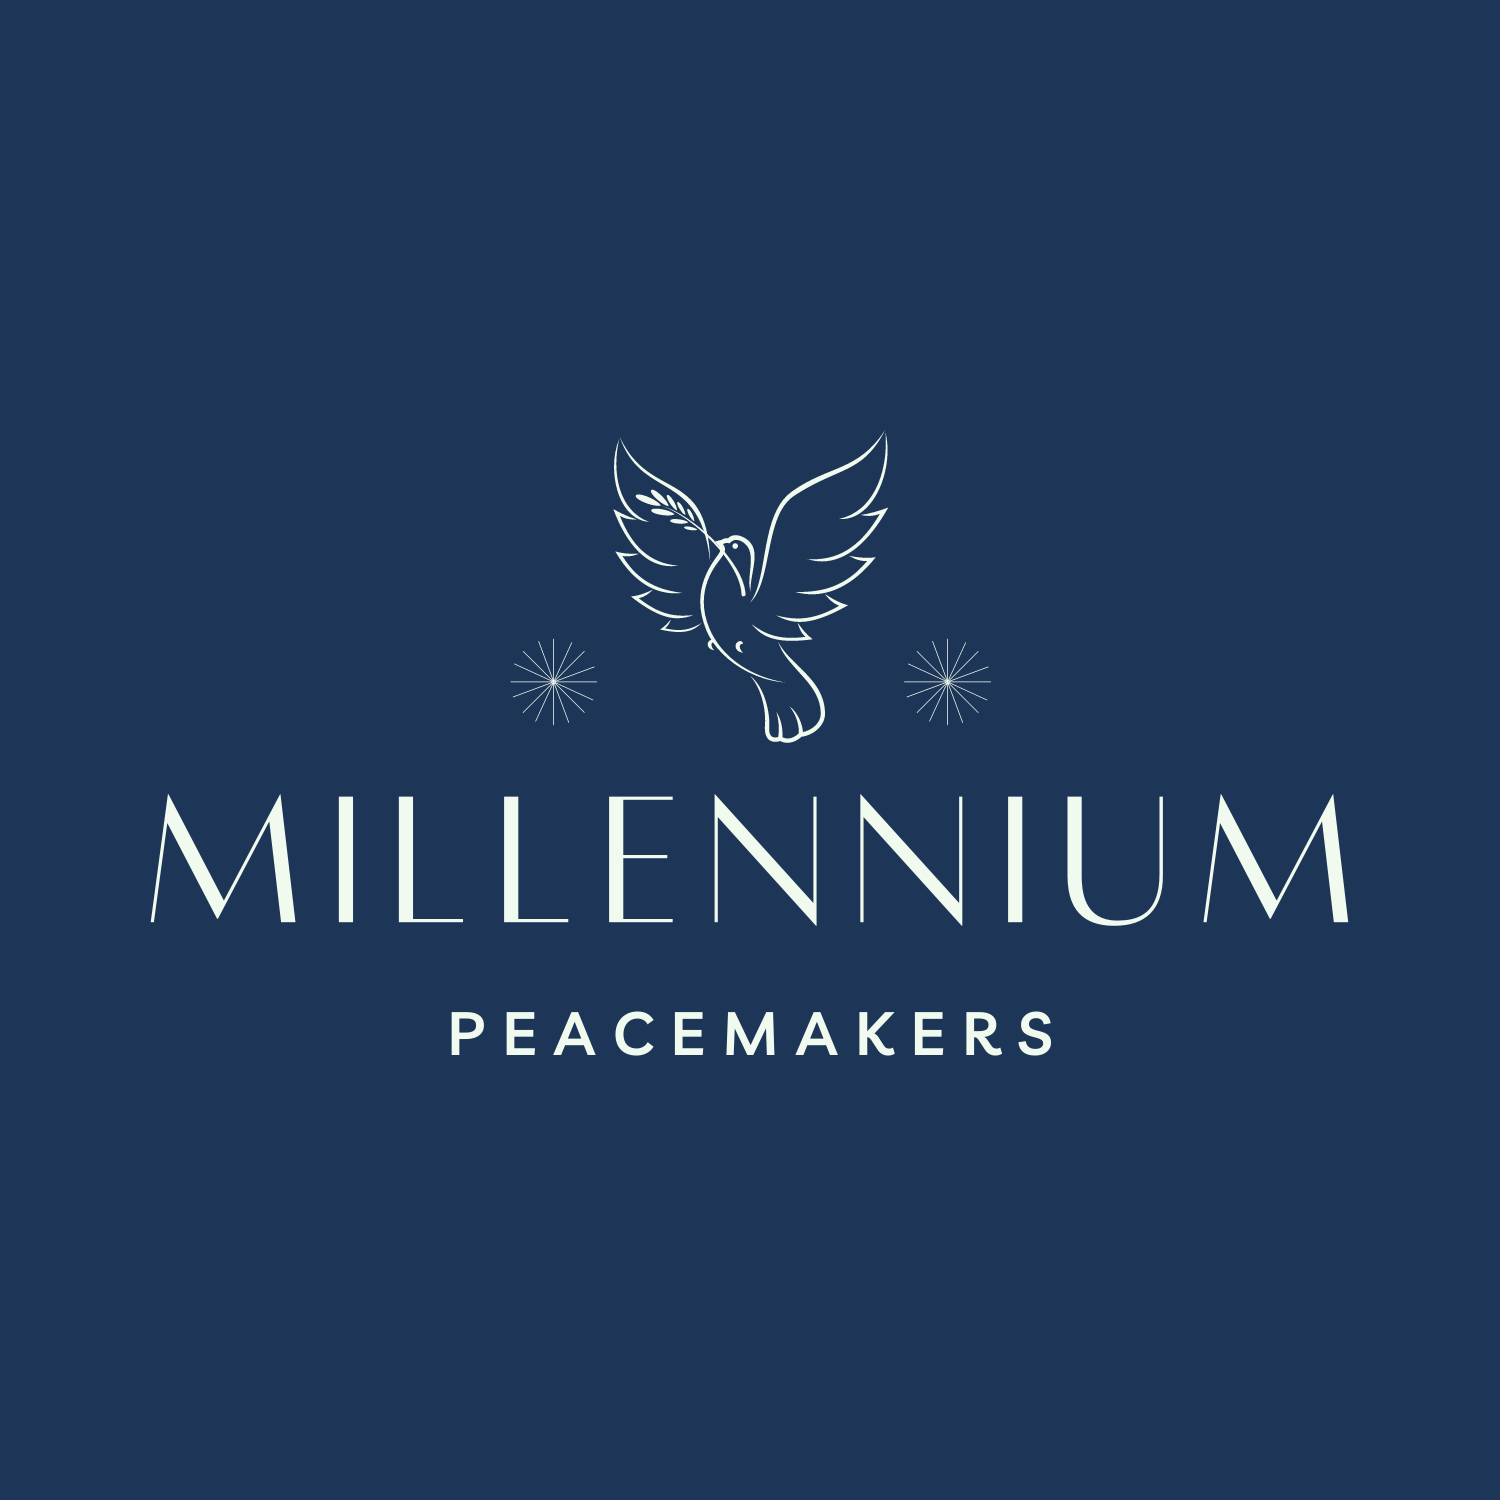 Millennium Peacemakers